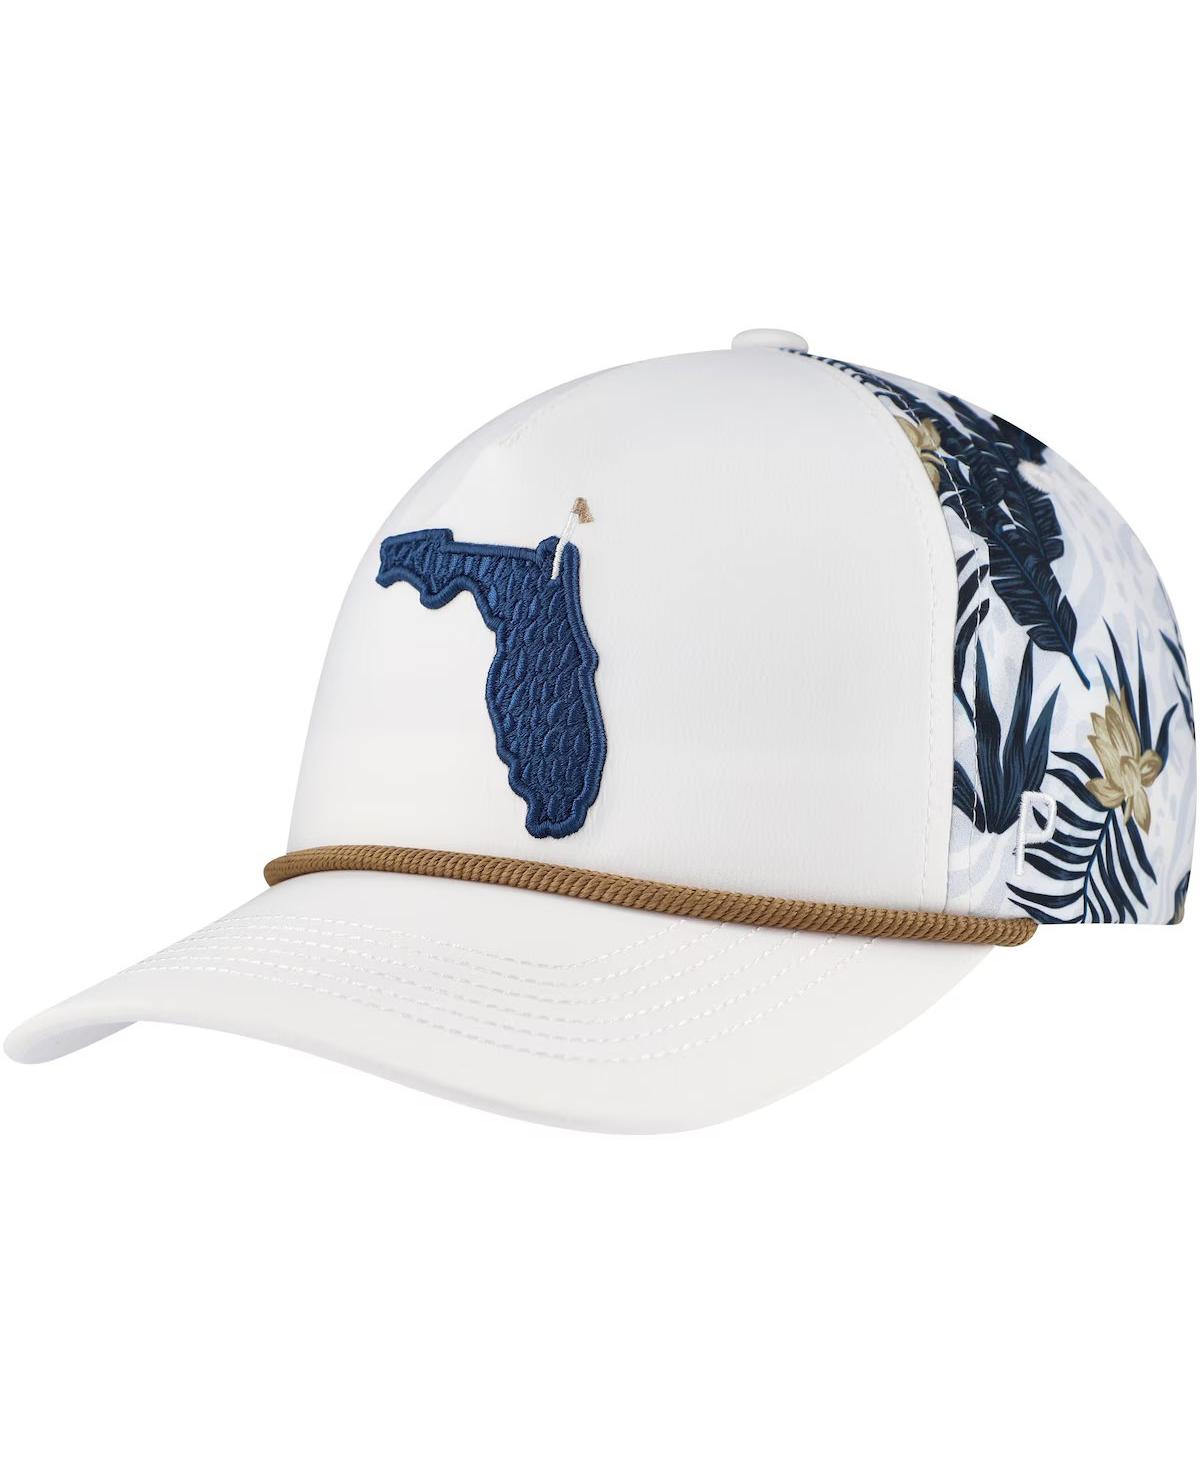 Shop Puma Men's White The Players Tropics Tech Rope Flexfitâ Adjustable Hat